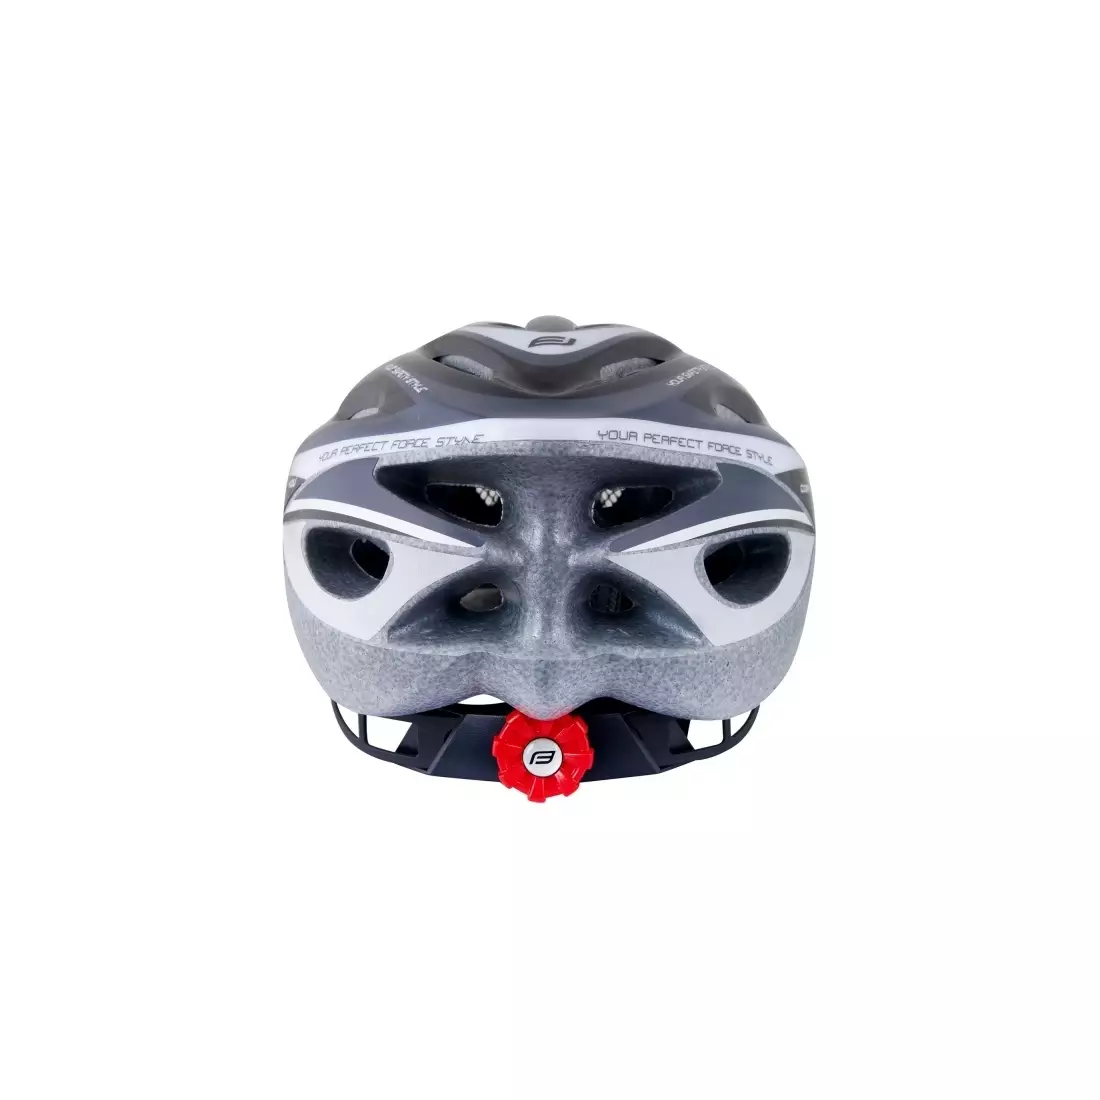 FORCE bicycle helmet HAL, black, 902475